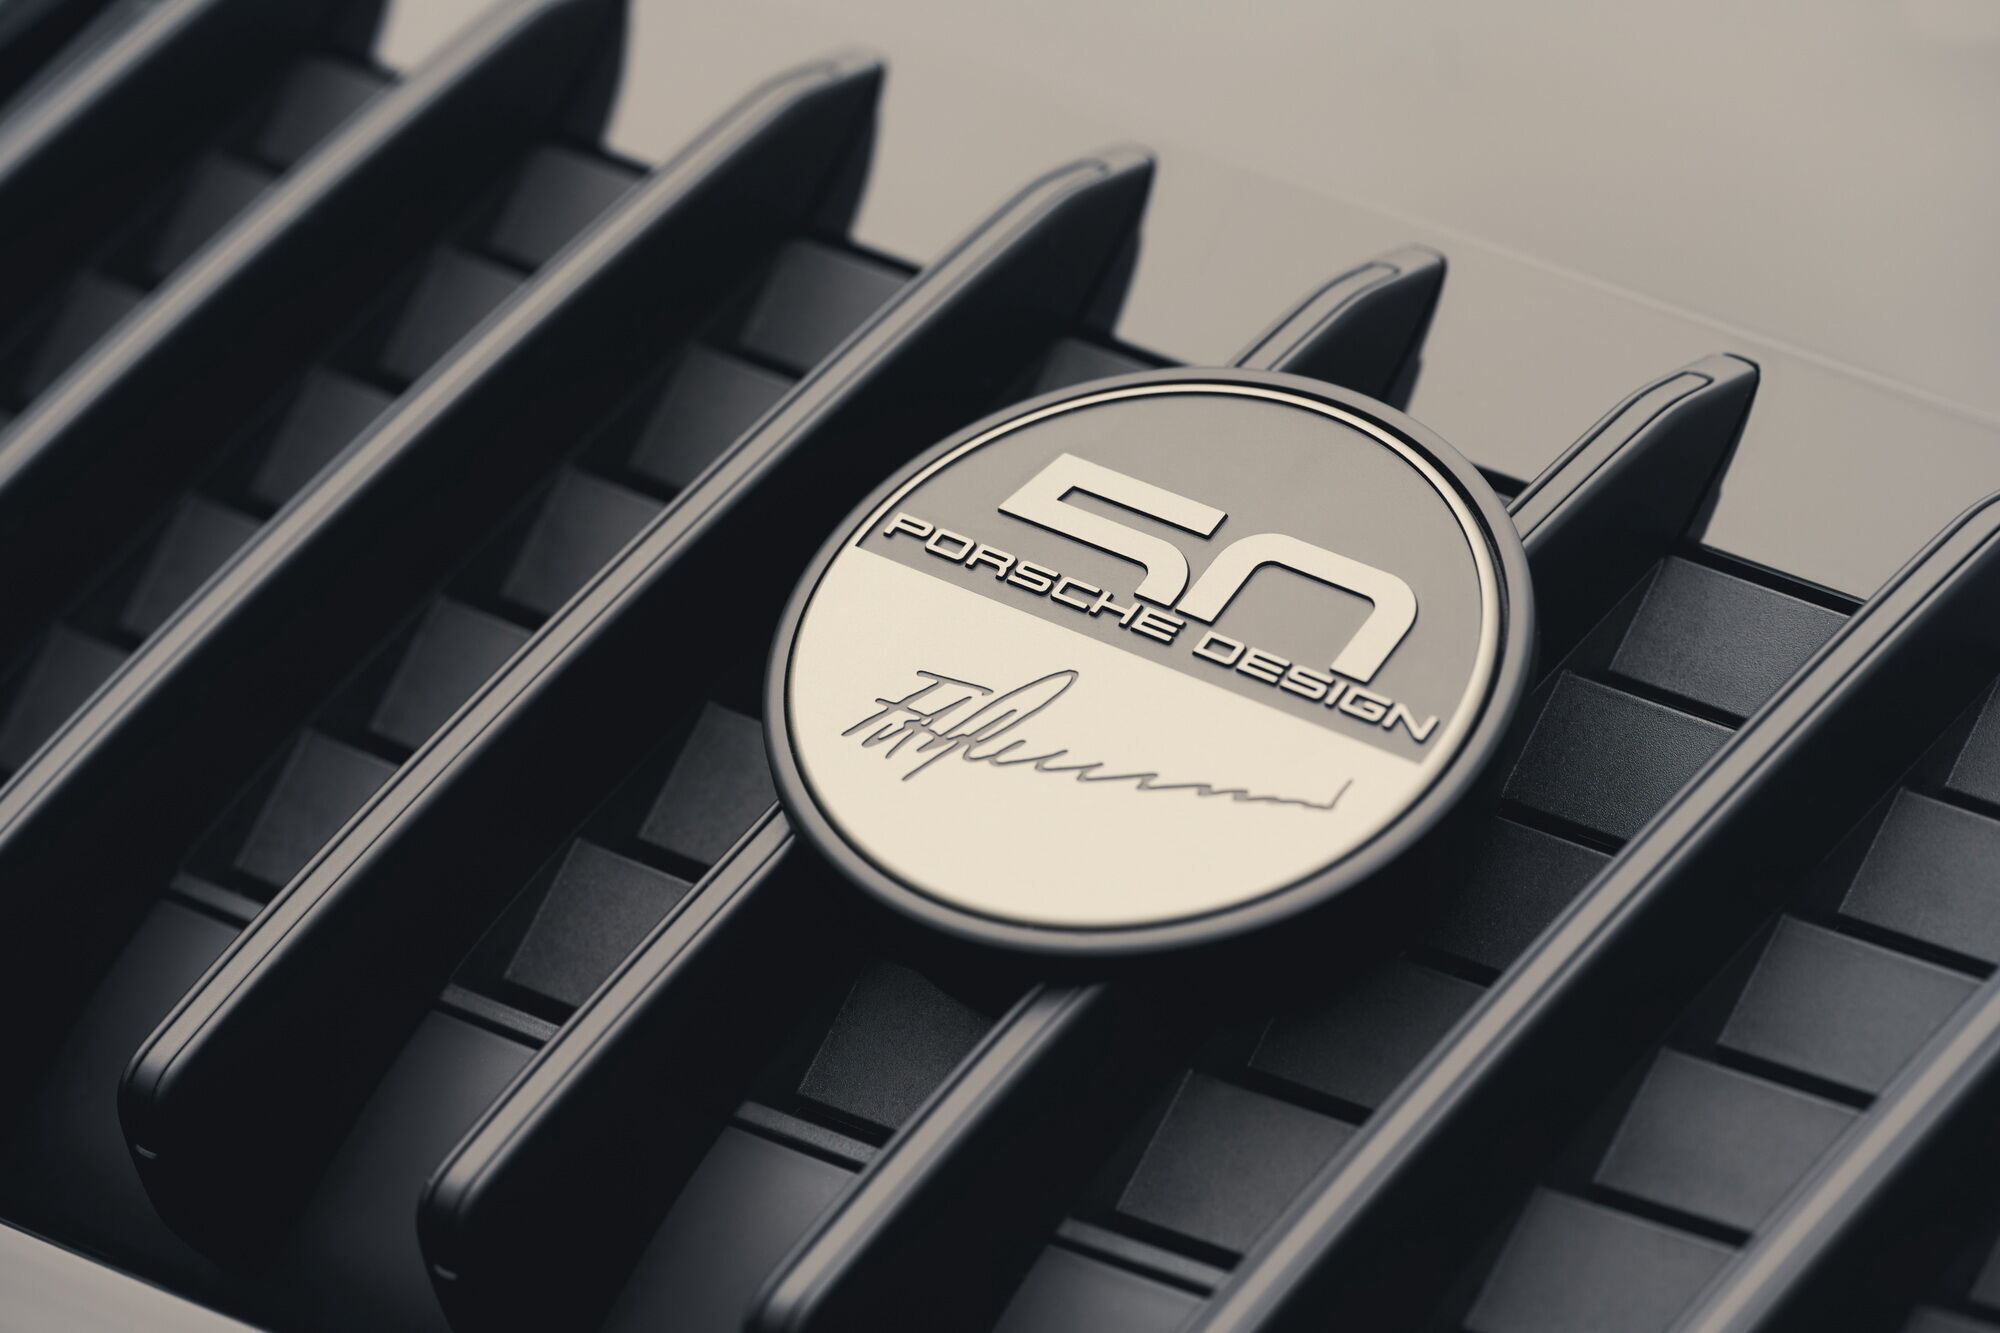 Решетку крышки двигателя украсил значок "50 лет Porsche Design" с факсимильной подписью Фердинанда Александра Порше